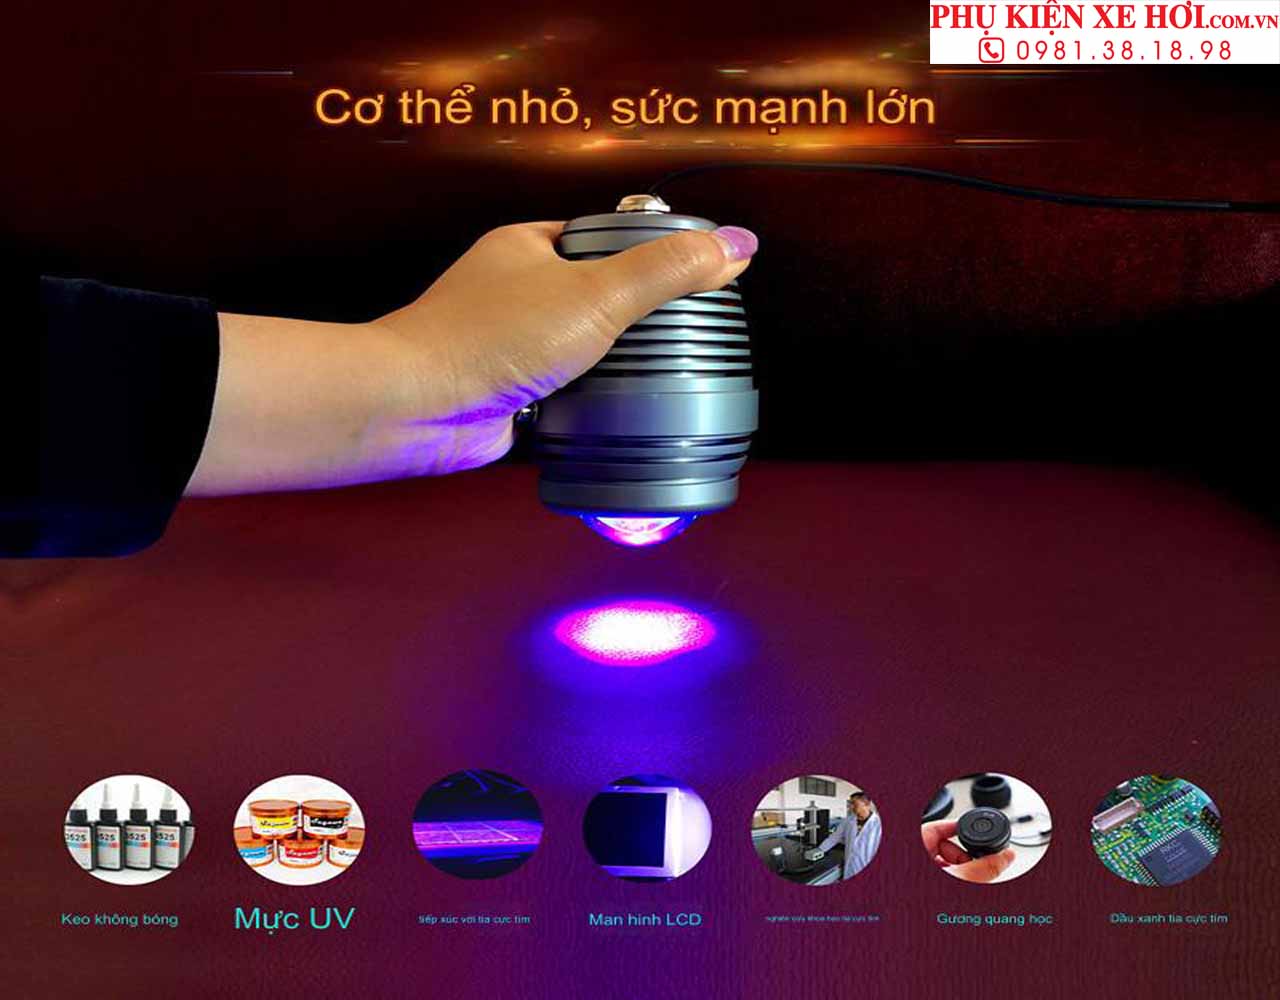 Đèn UV, đèn dùng để dán keo UV, đèn UV chuyên nghiệp, đèn uv cao cấp, đèn uv hàn keo uv, đèn uv gắn kính ô tô, đèn uv hàn kính